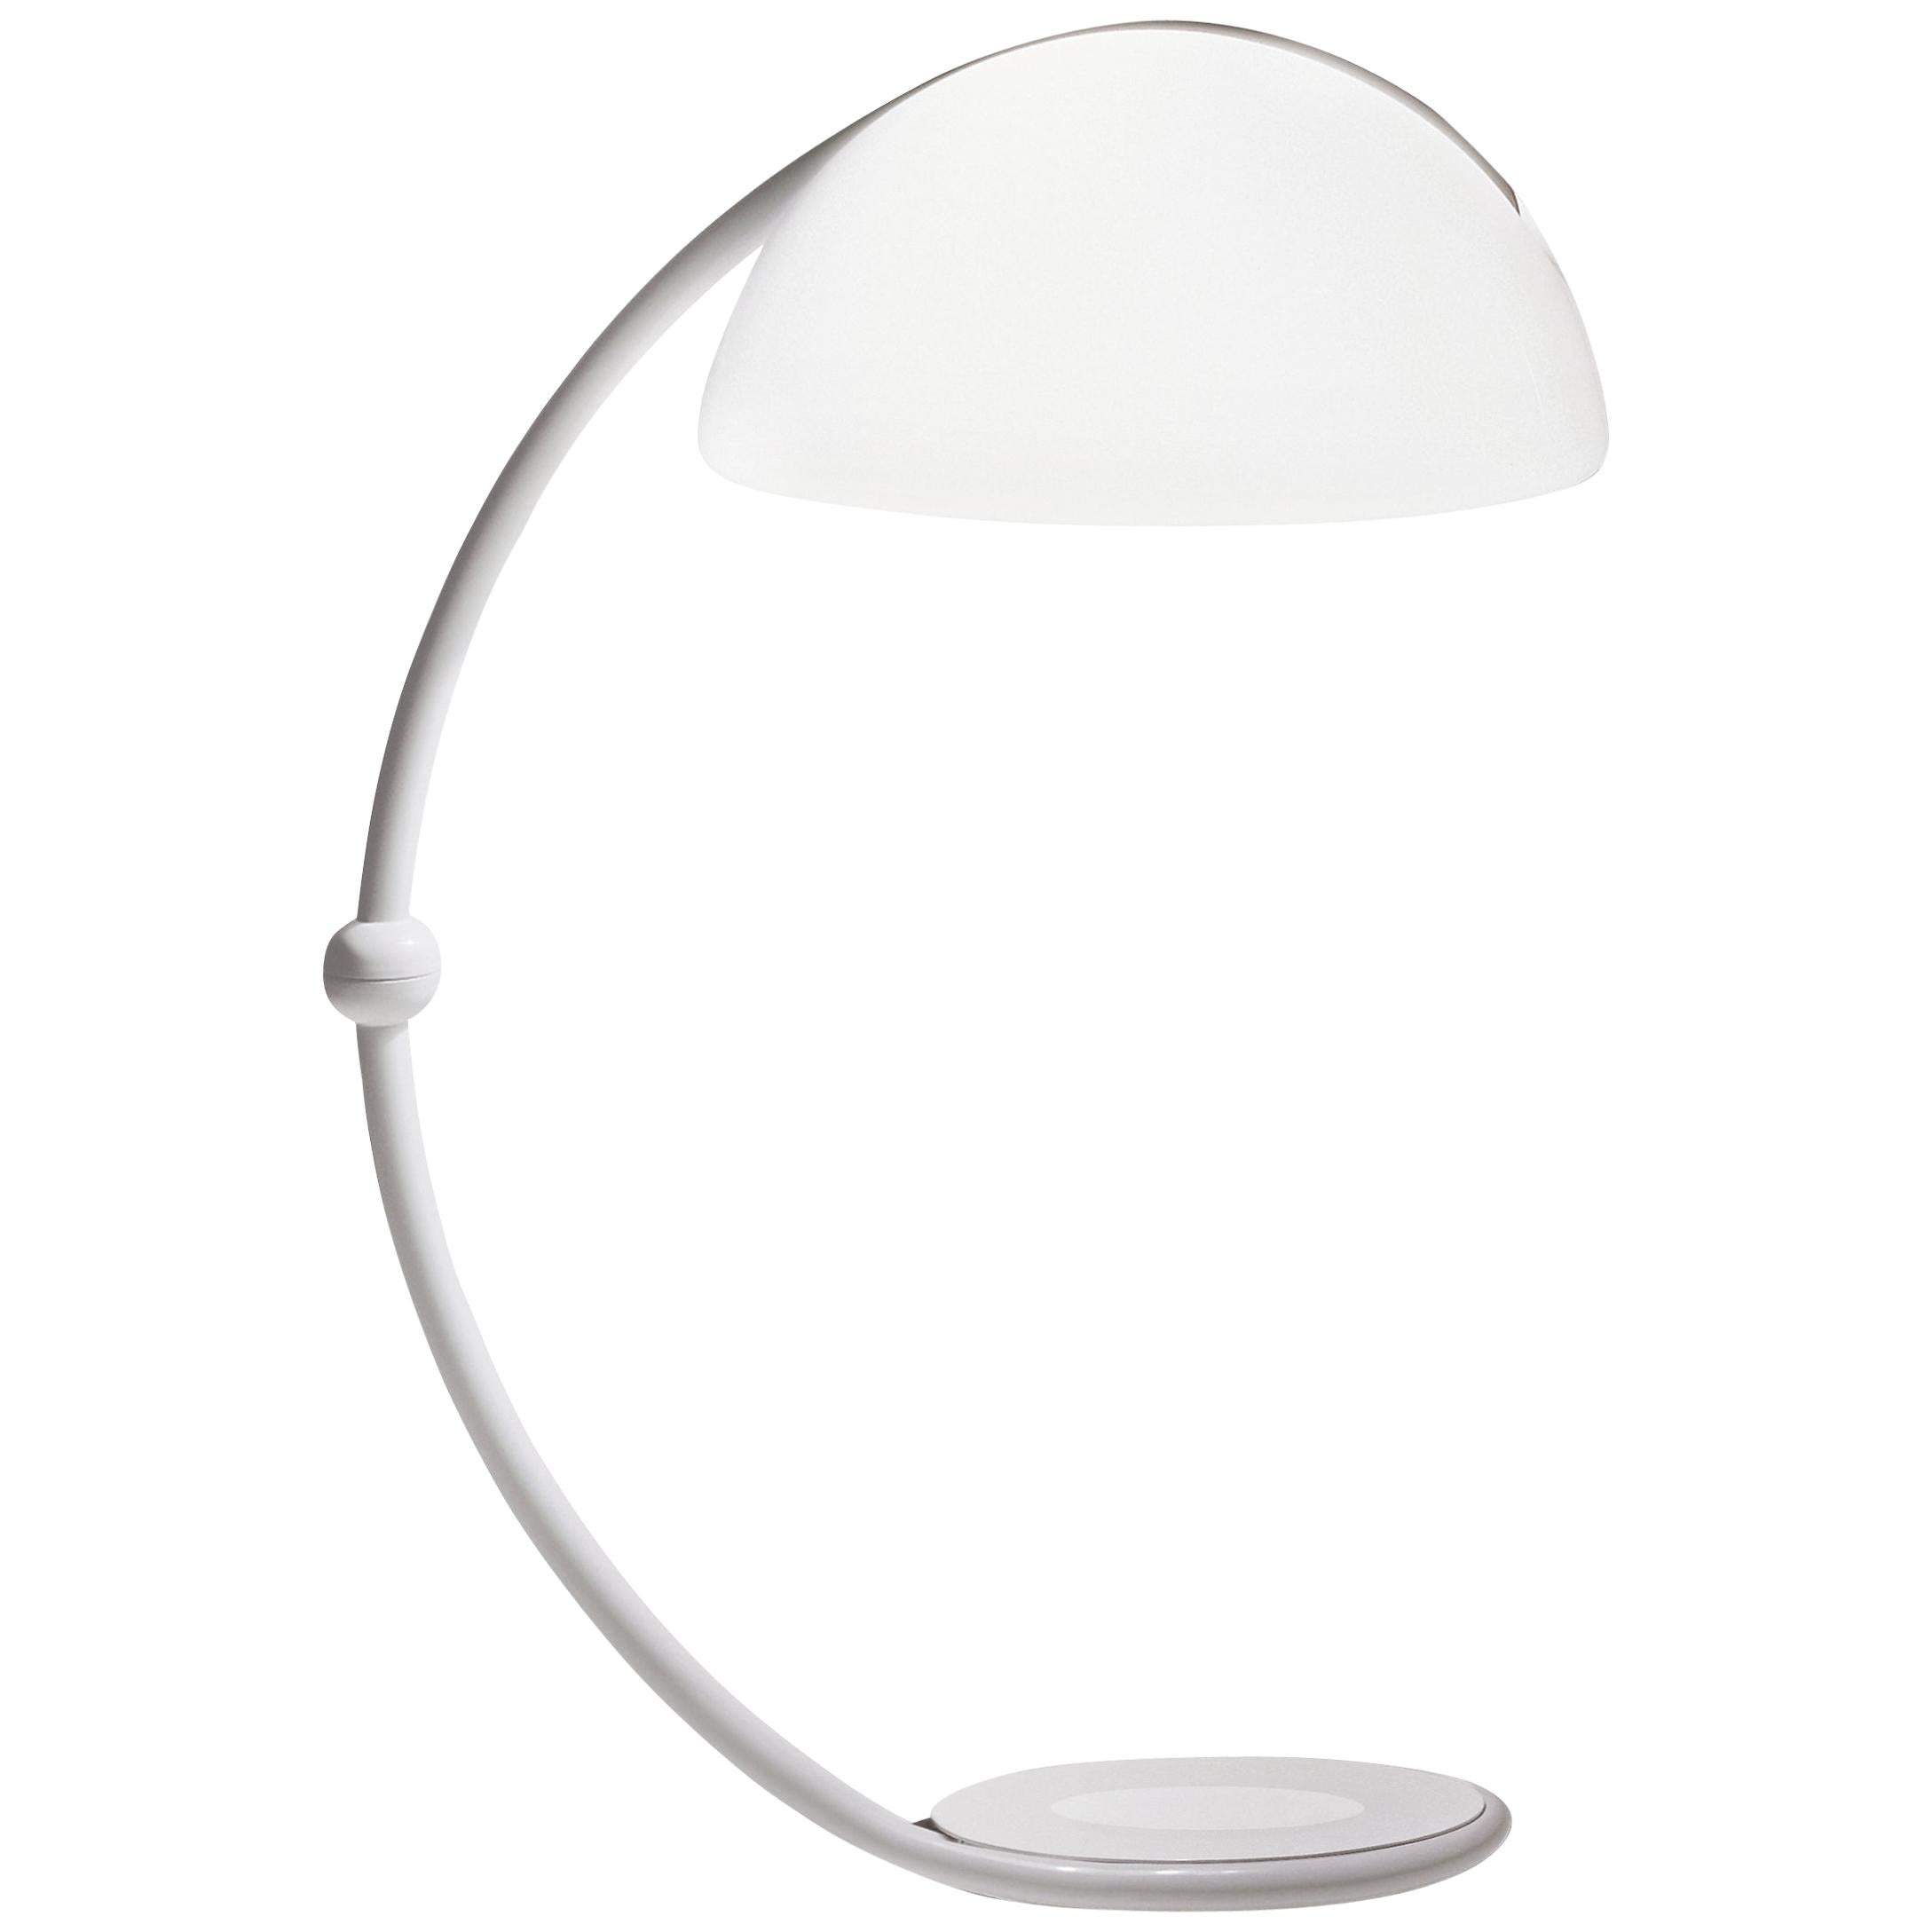 Martinelli Luce Serpente 2131 Floor Lamp in White by Elio Martinelli